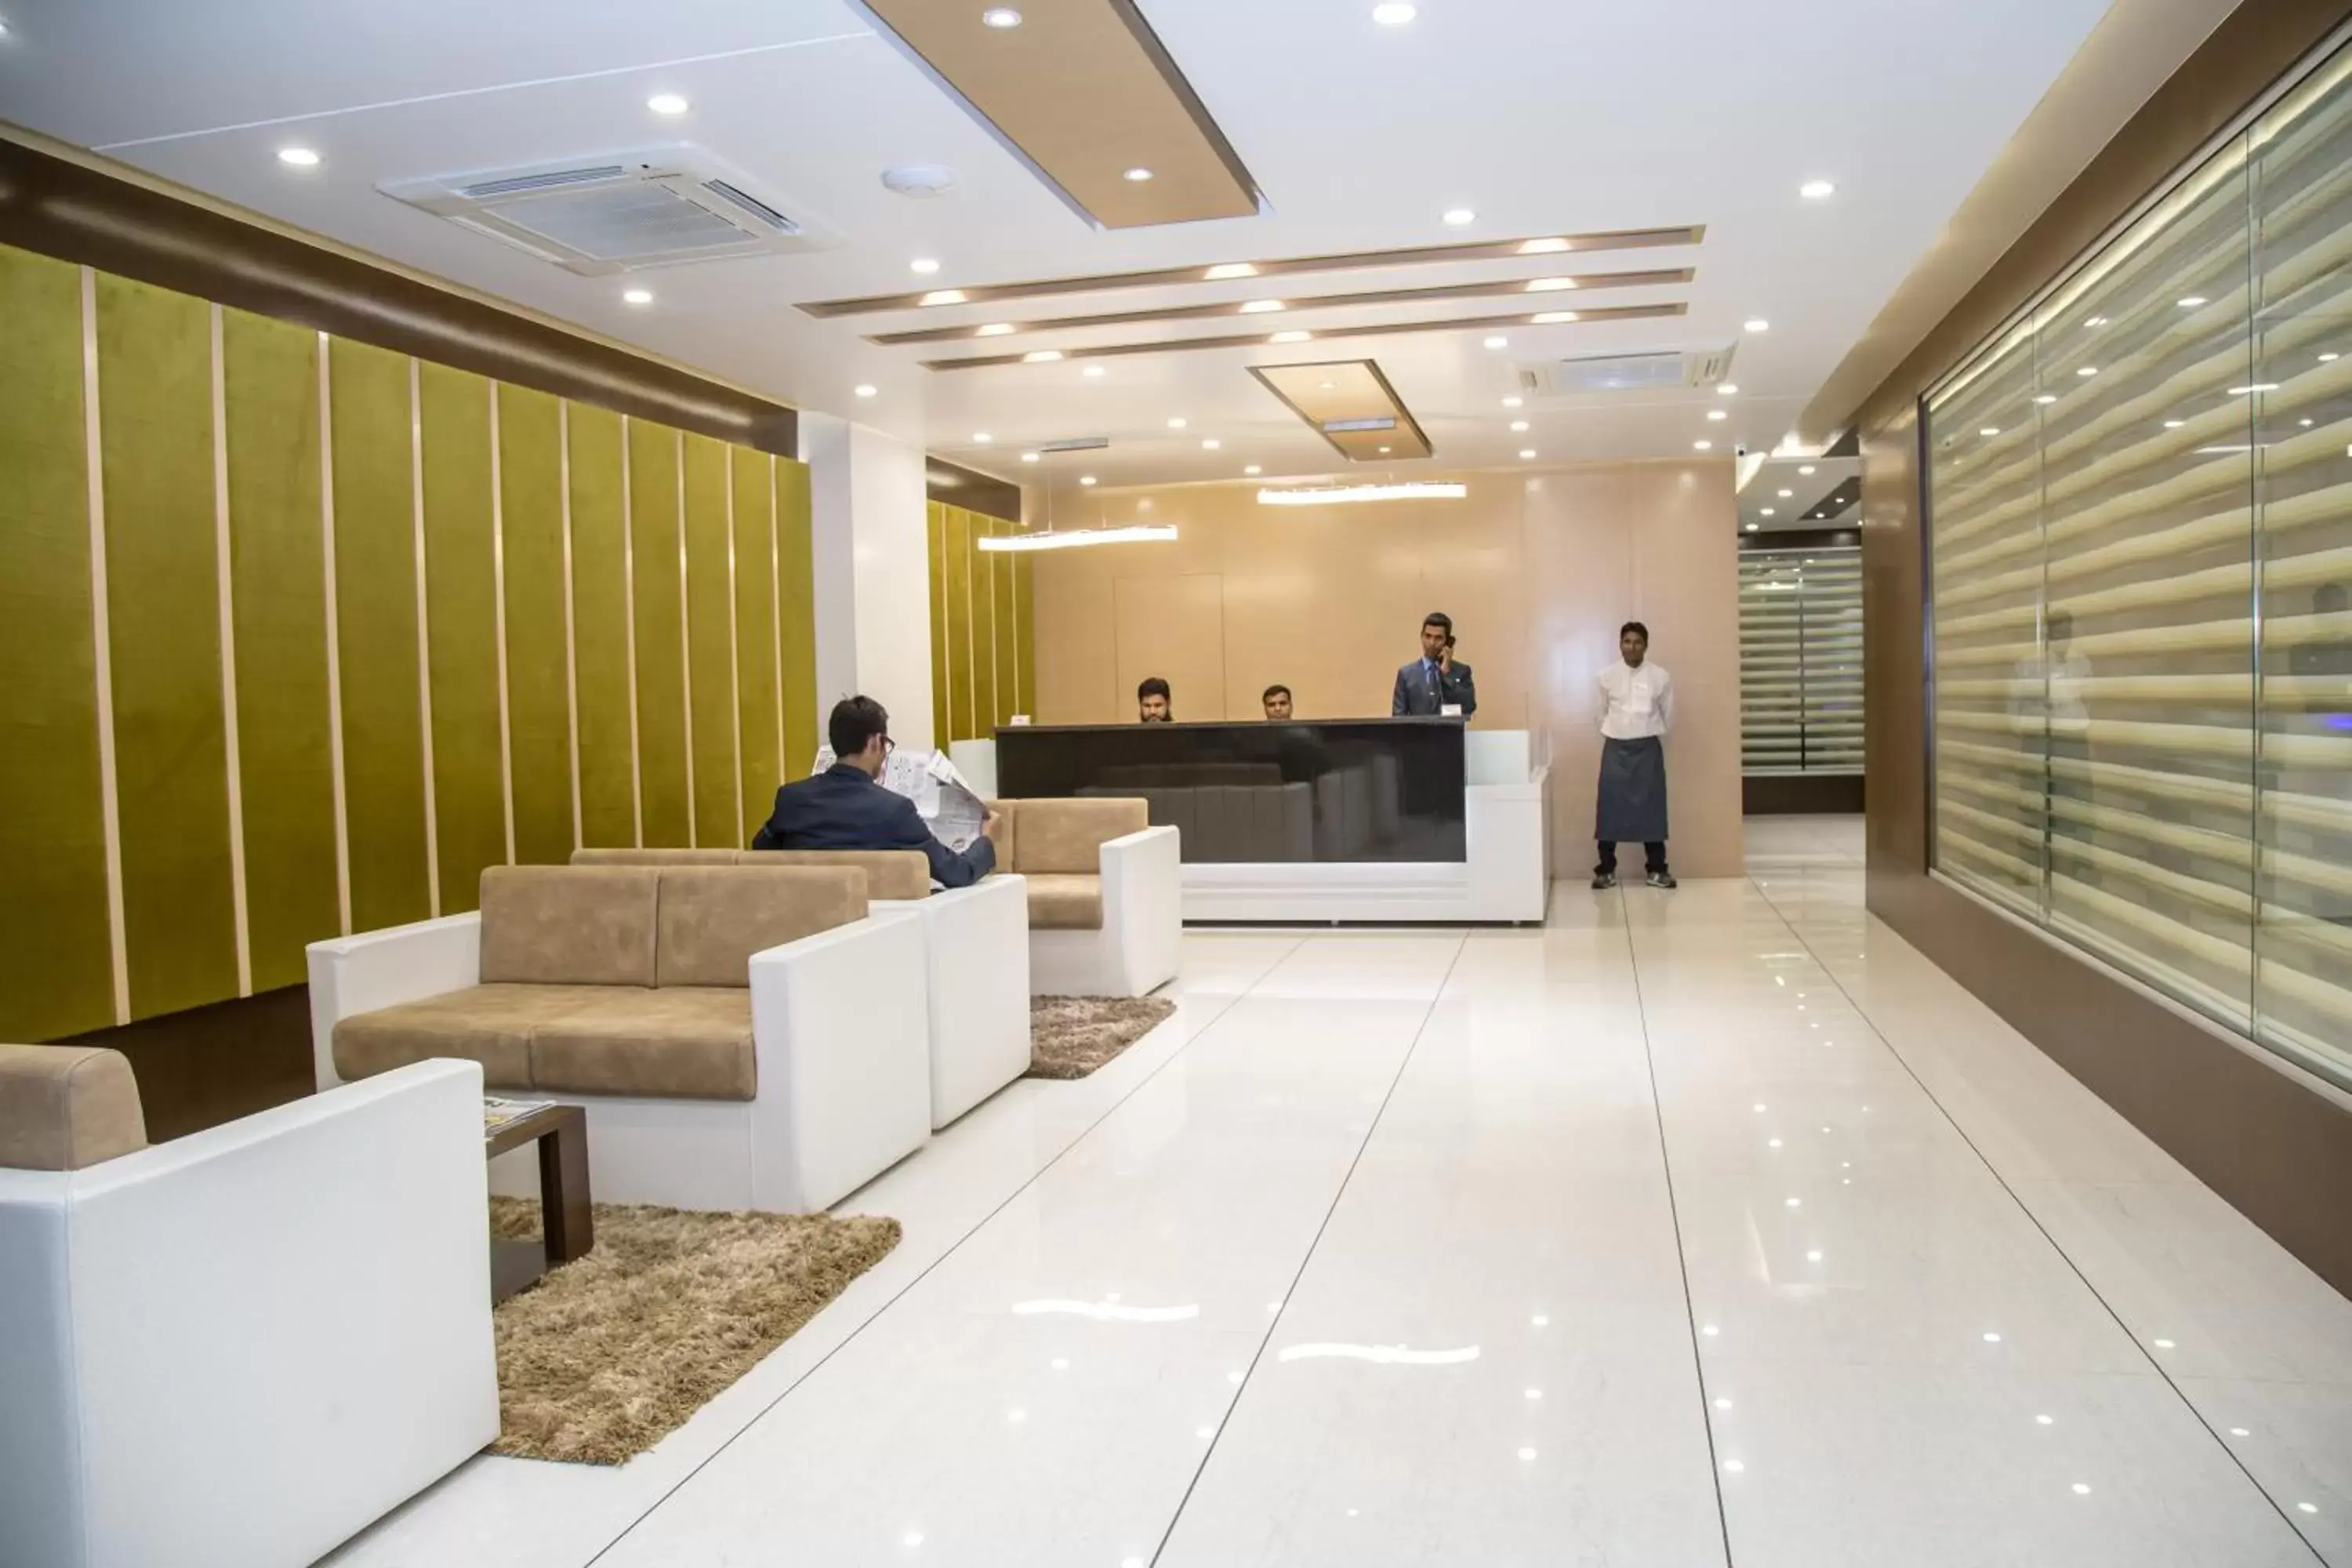 Lobby or reception, Staff in Hotel Orange International